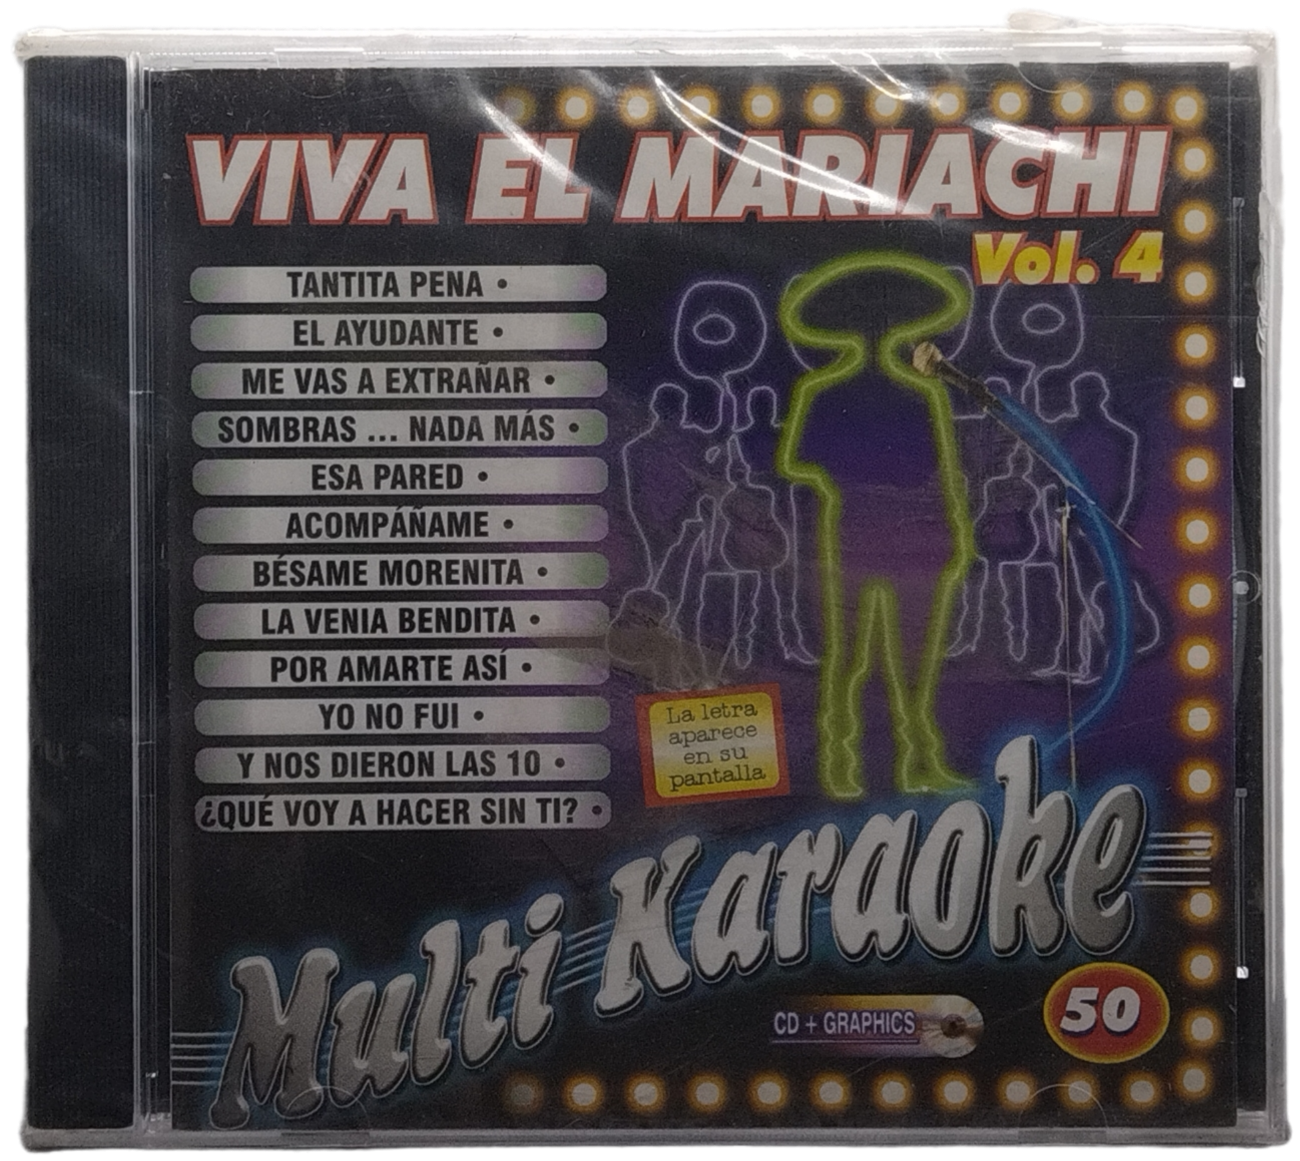 multi karaoke  - canta como viva el mariachi vol.4